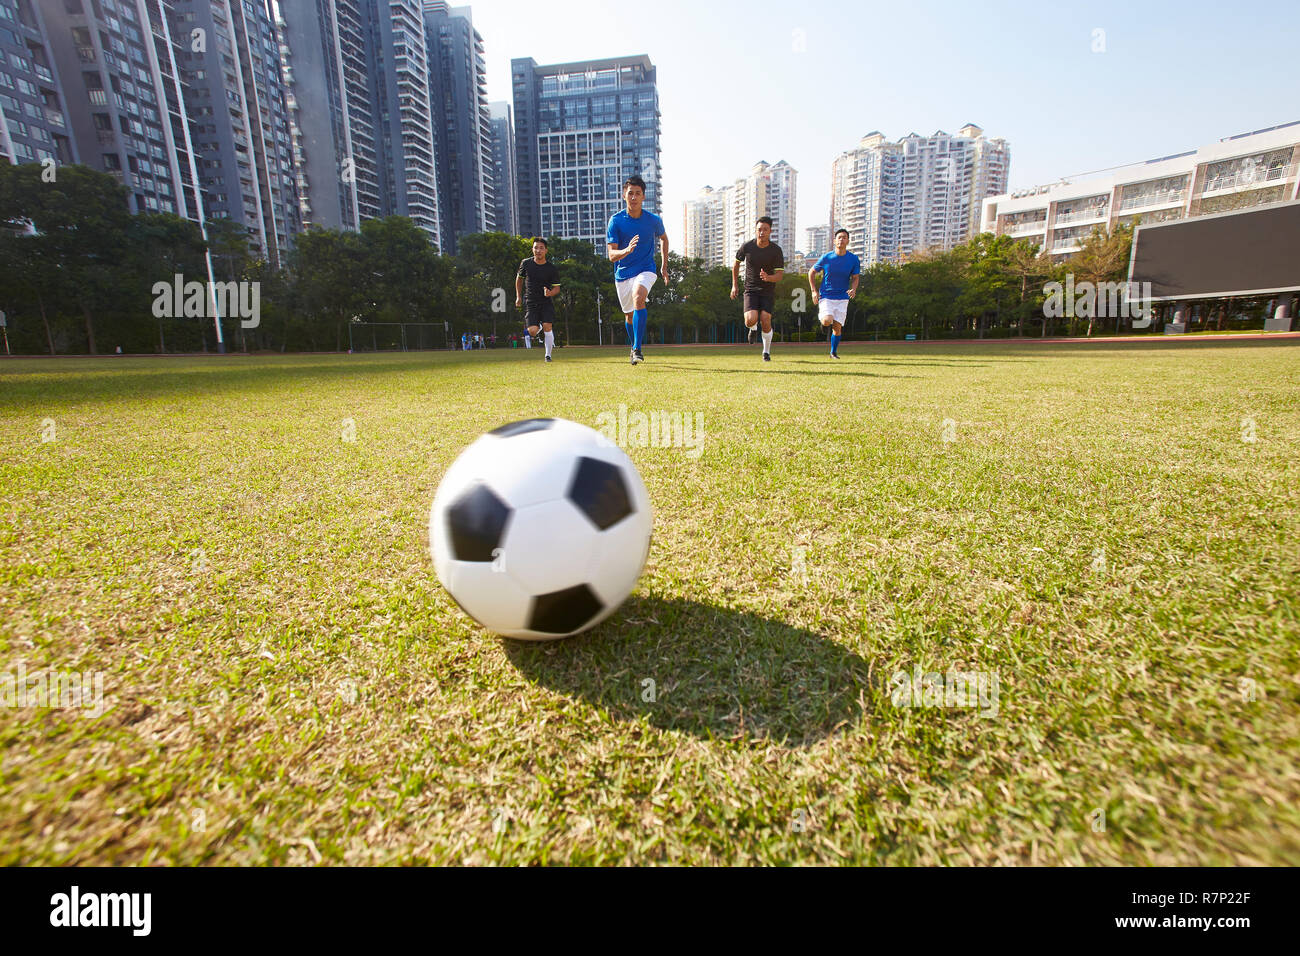 Les jeunes joueurs de football football asiatique courir après la balle lors d'un match Banque D'Images